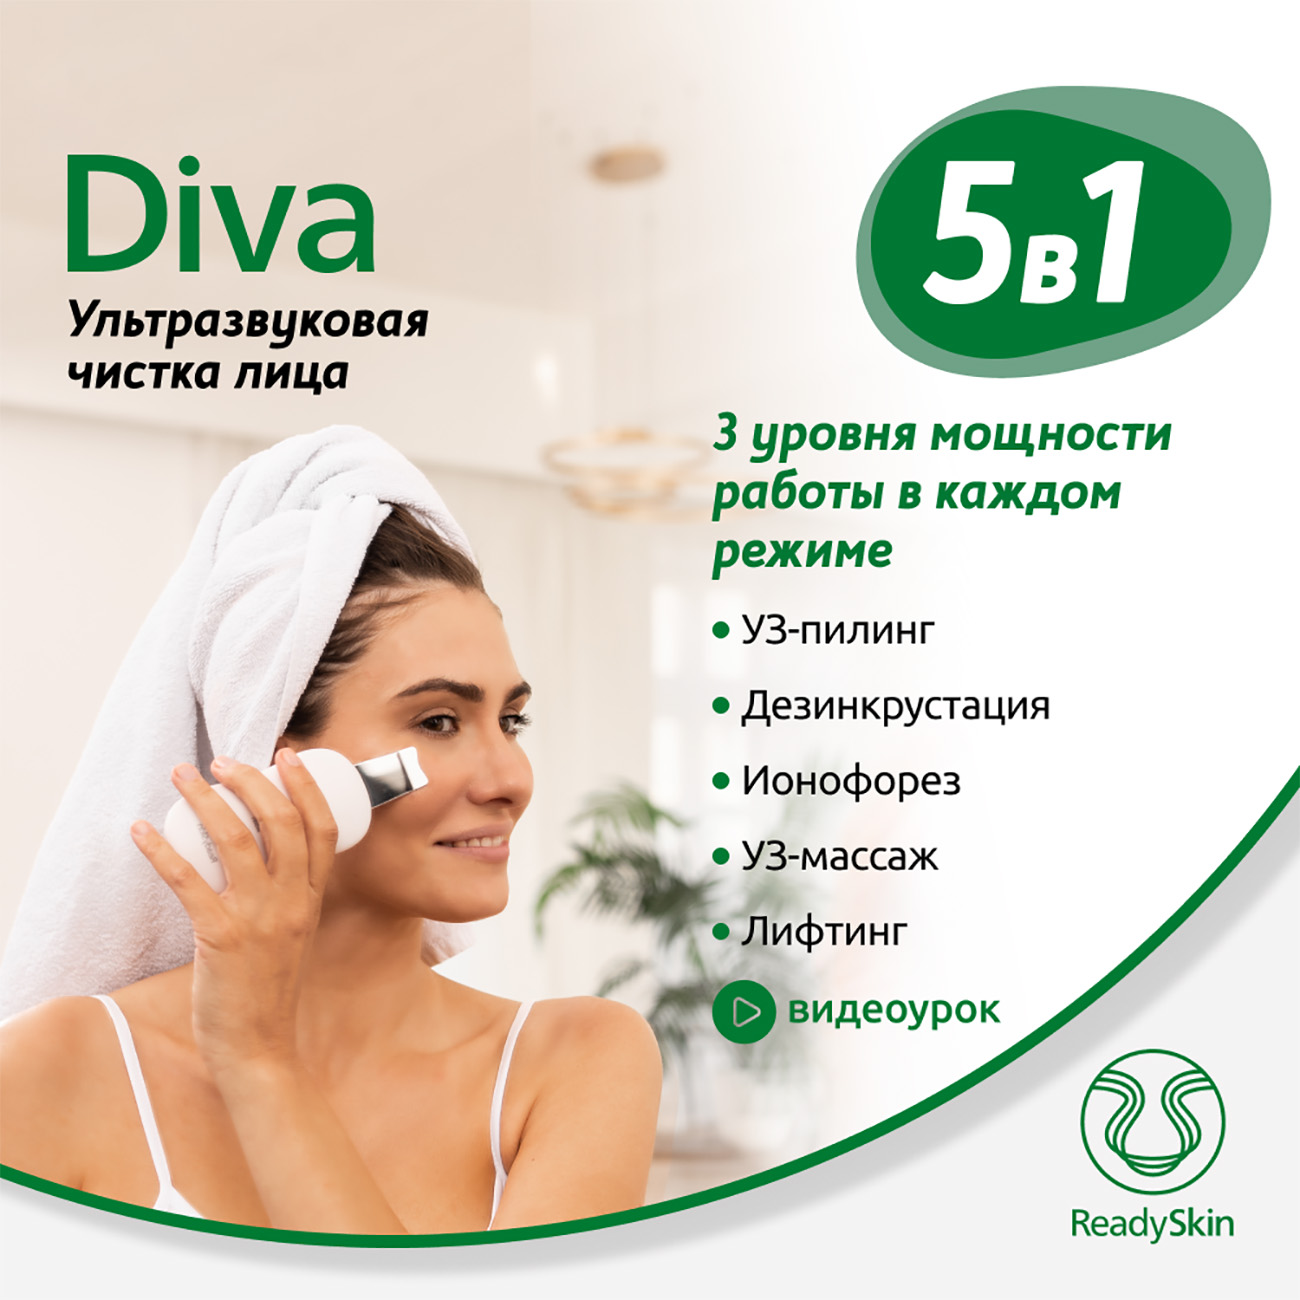 Аппарат ReadySkin Diva для ультразвуковой чистки лица массажа и микротокового лифтинга